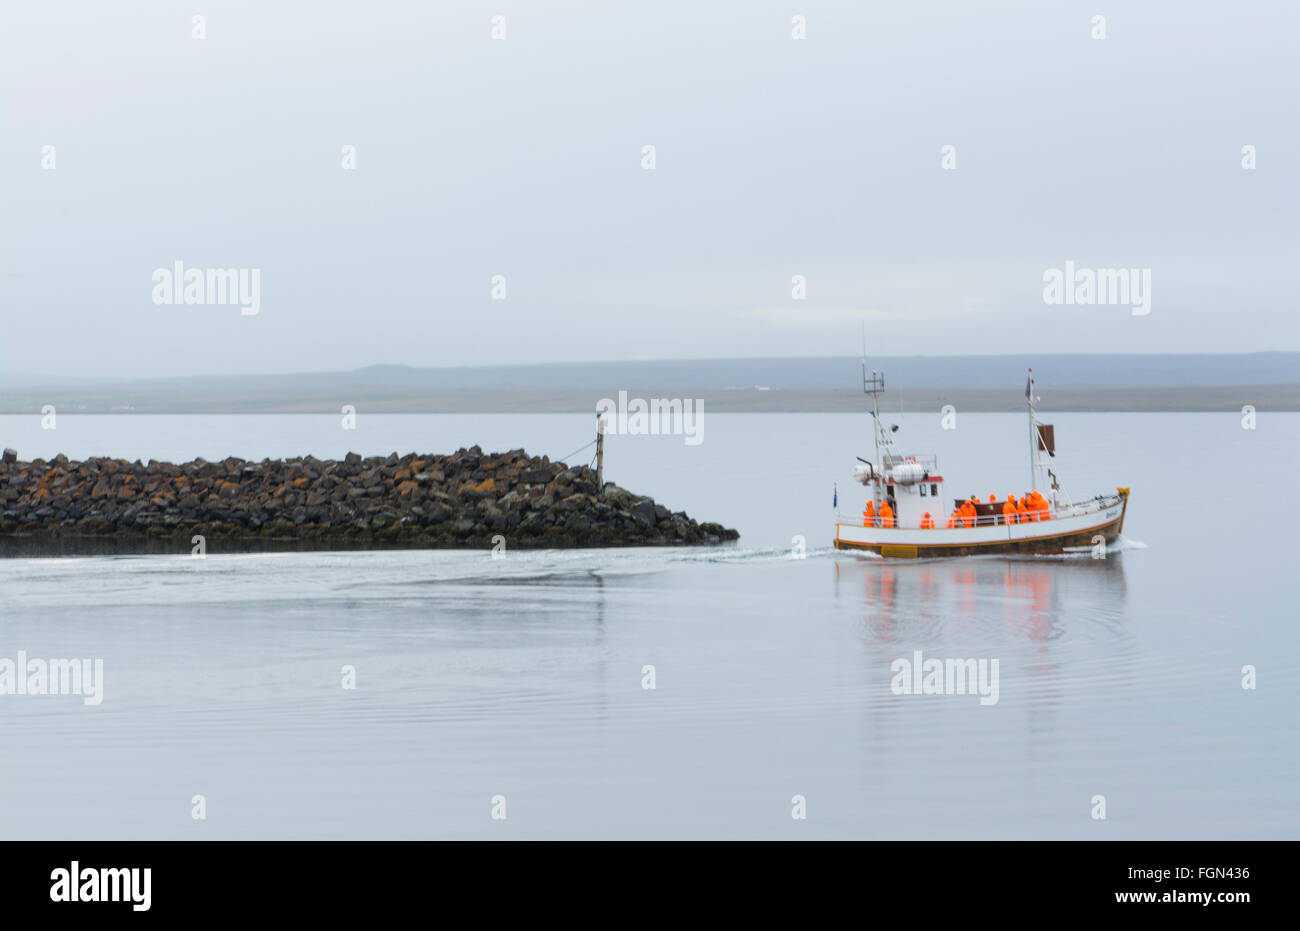 Hvammstangi Islande Islande du bateau d'observation des phoques au quai avec les touristes en orange d'imperméables Banque D'Images